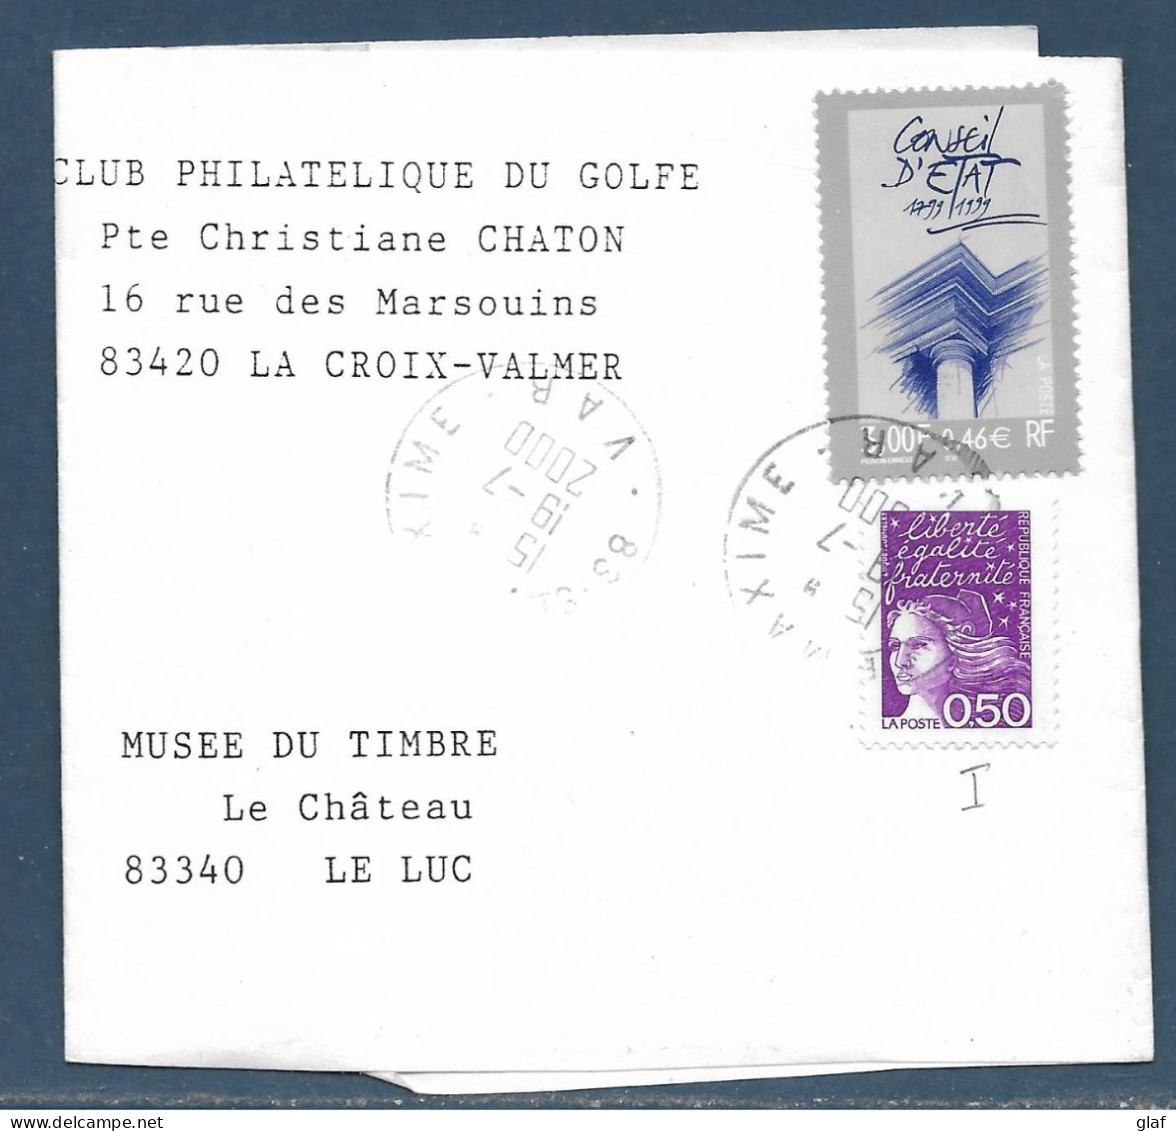 Bande De Revue Affranchie 0,50 Marianne De Luquet Et 0,46 € Conseil D’Etat Tàd 83 Ste Maxime 19.7.2000 - Tarifs Postaux